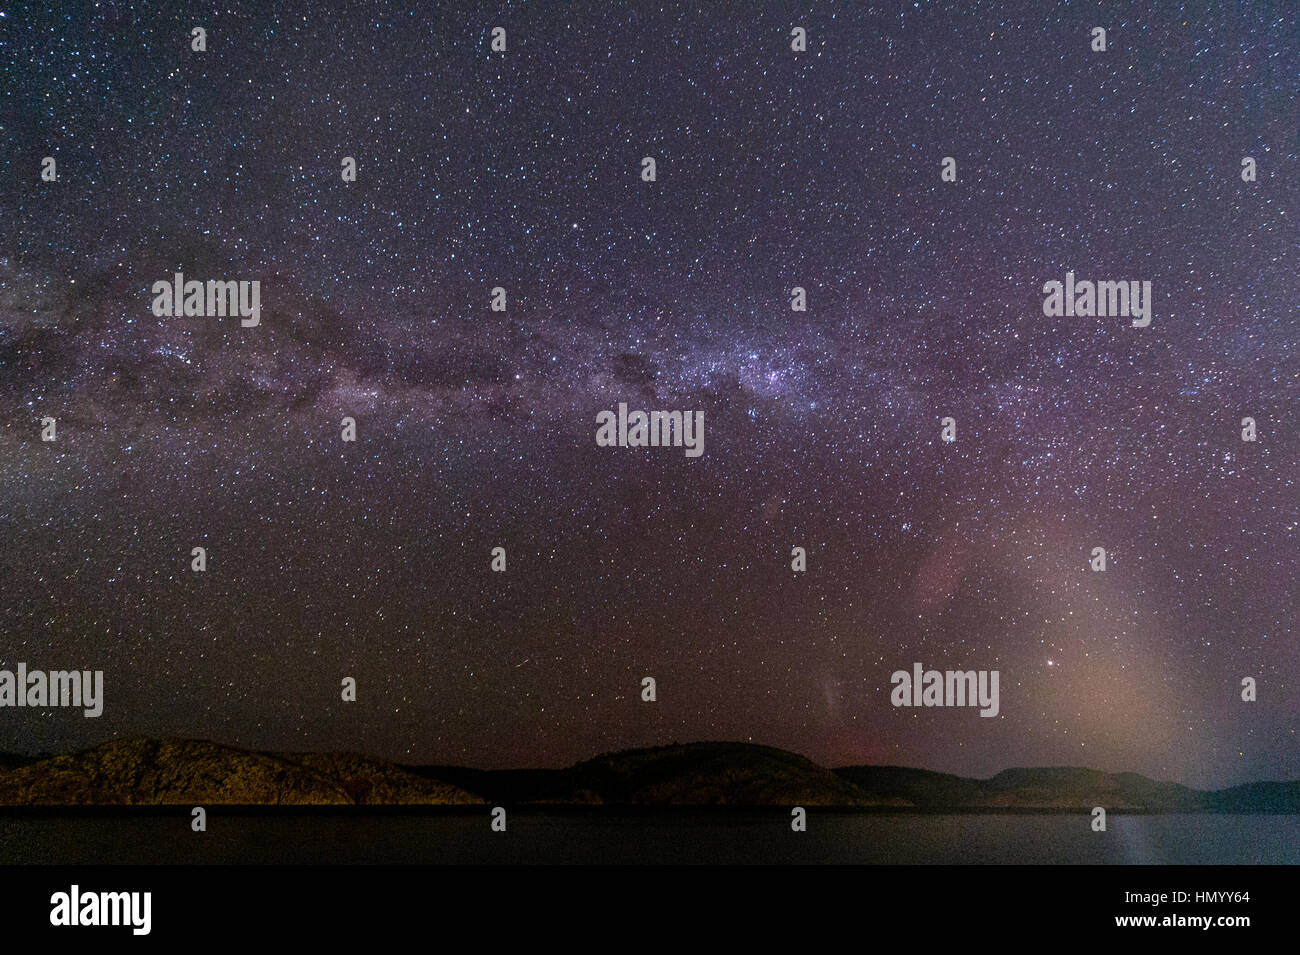 Les étoiles de la Voie lactée s'étend sur le ciel de l'hémisphère sud pendant la nuit. Banque D'Images